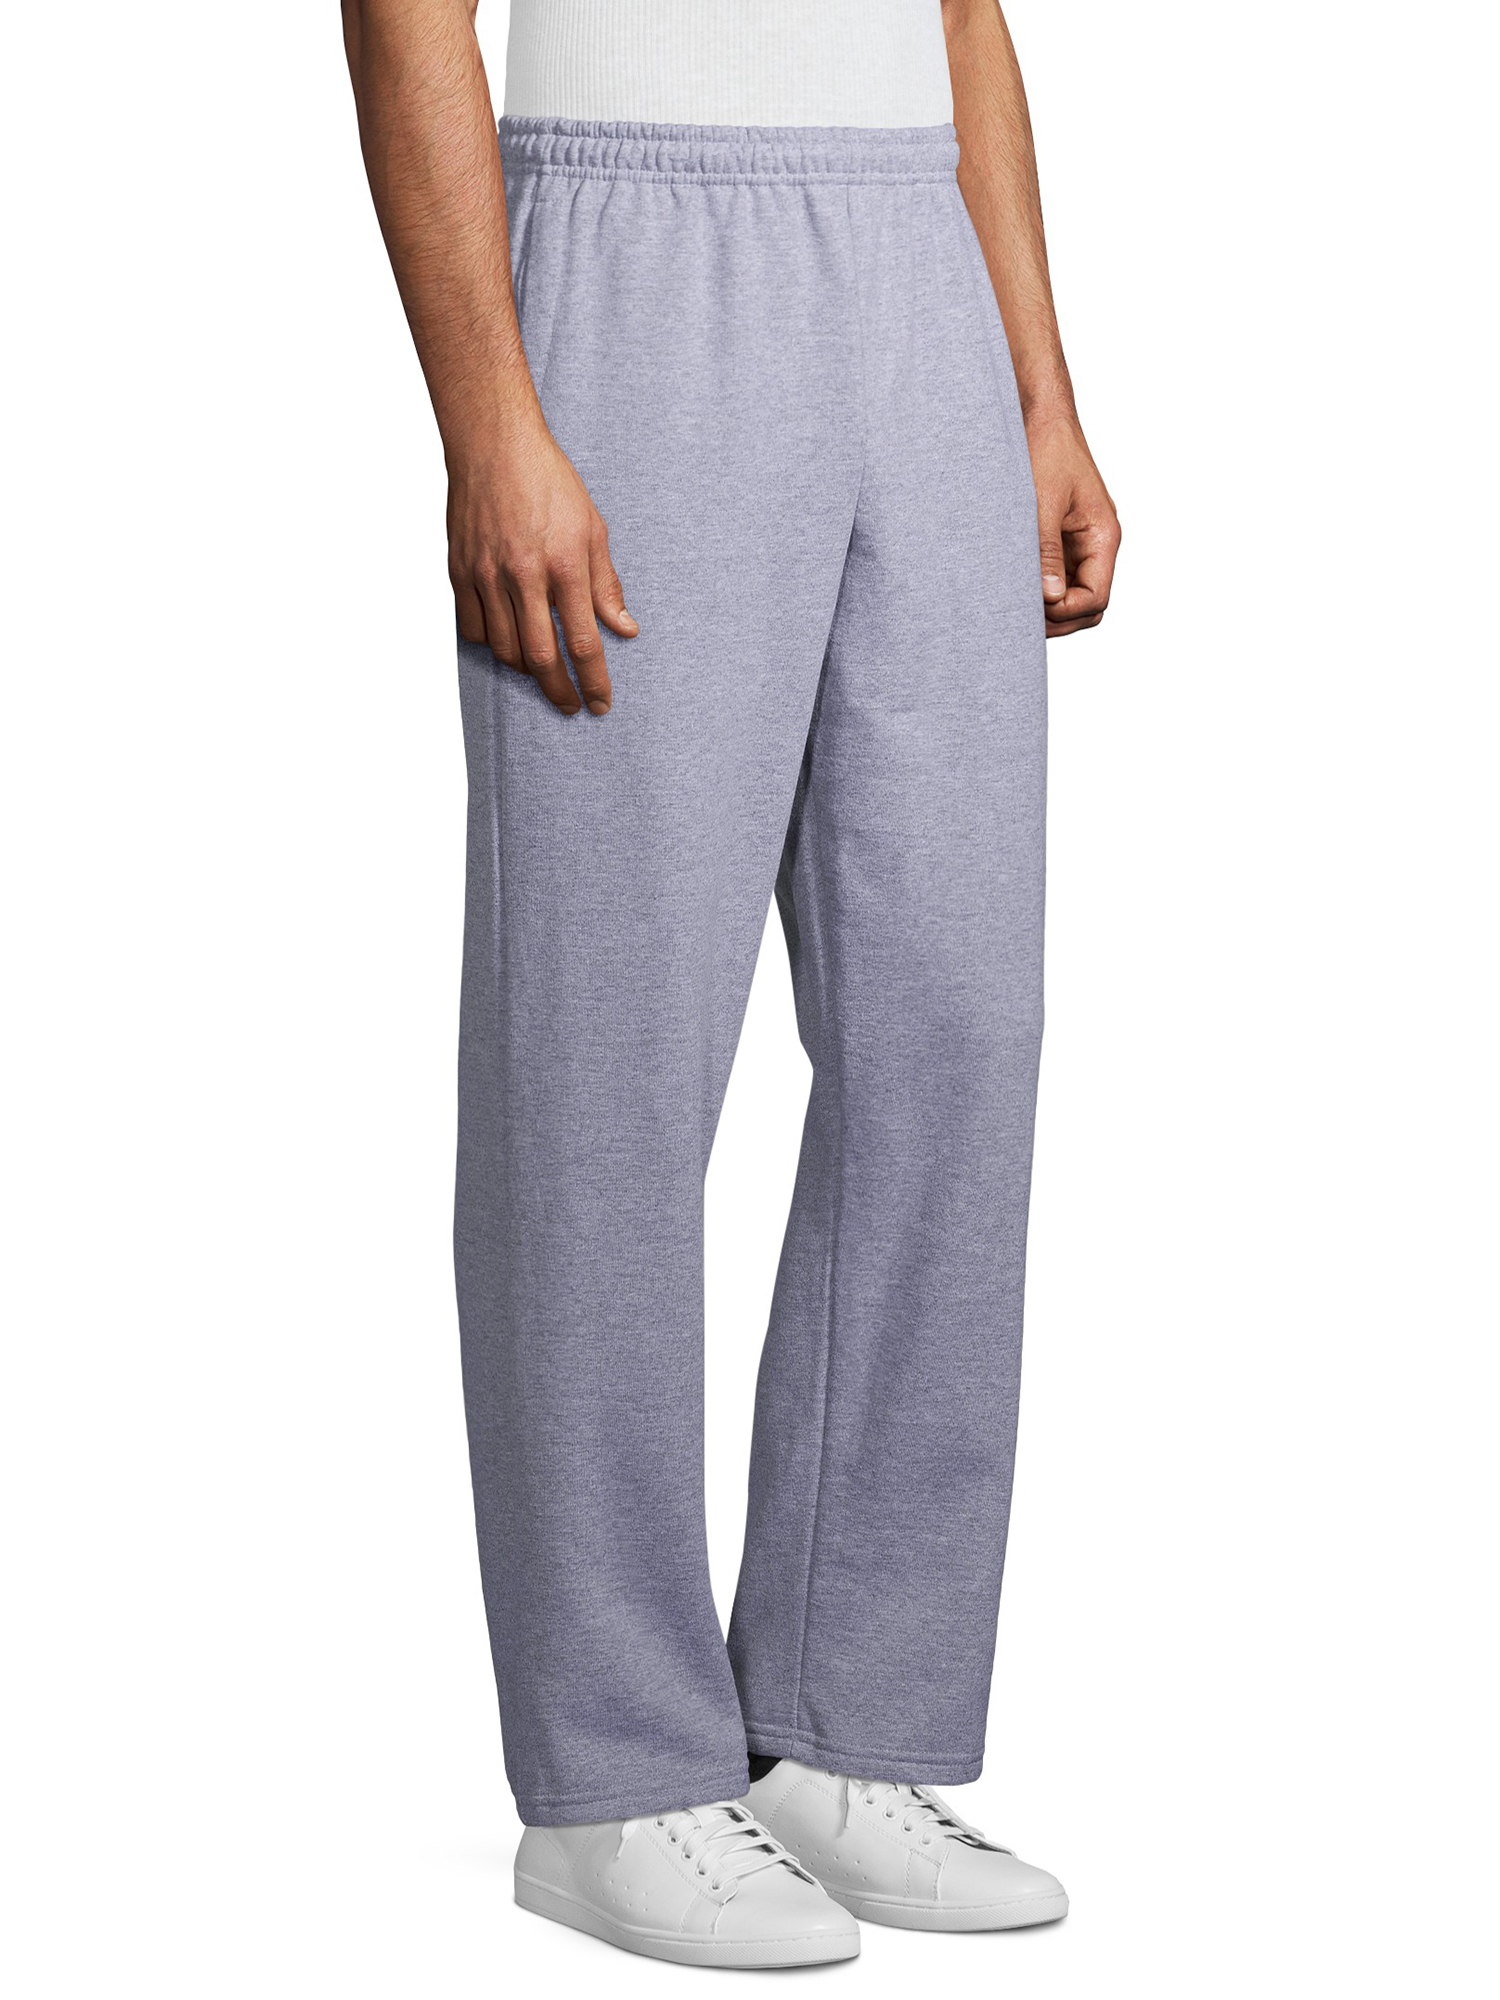 Gildan Men's Fleece Open Bottom Pocketed Sweatpants - Walmart.com